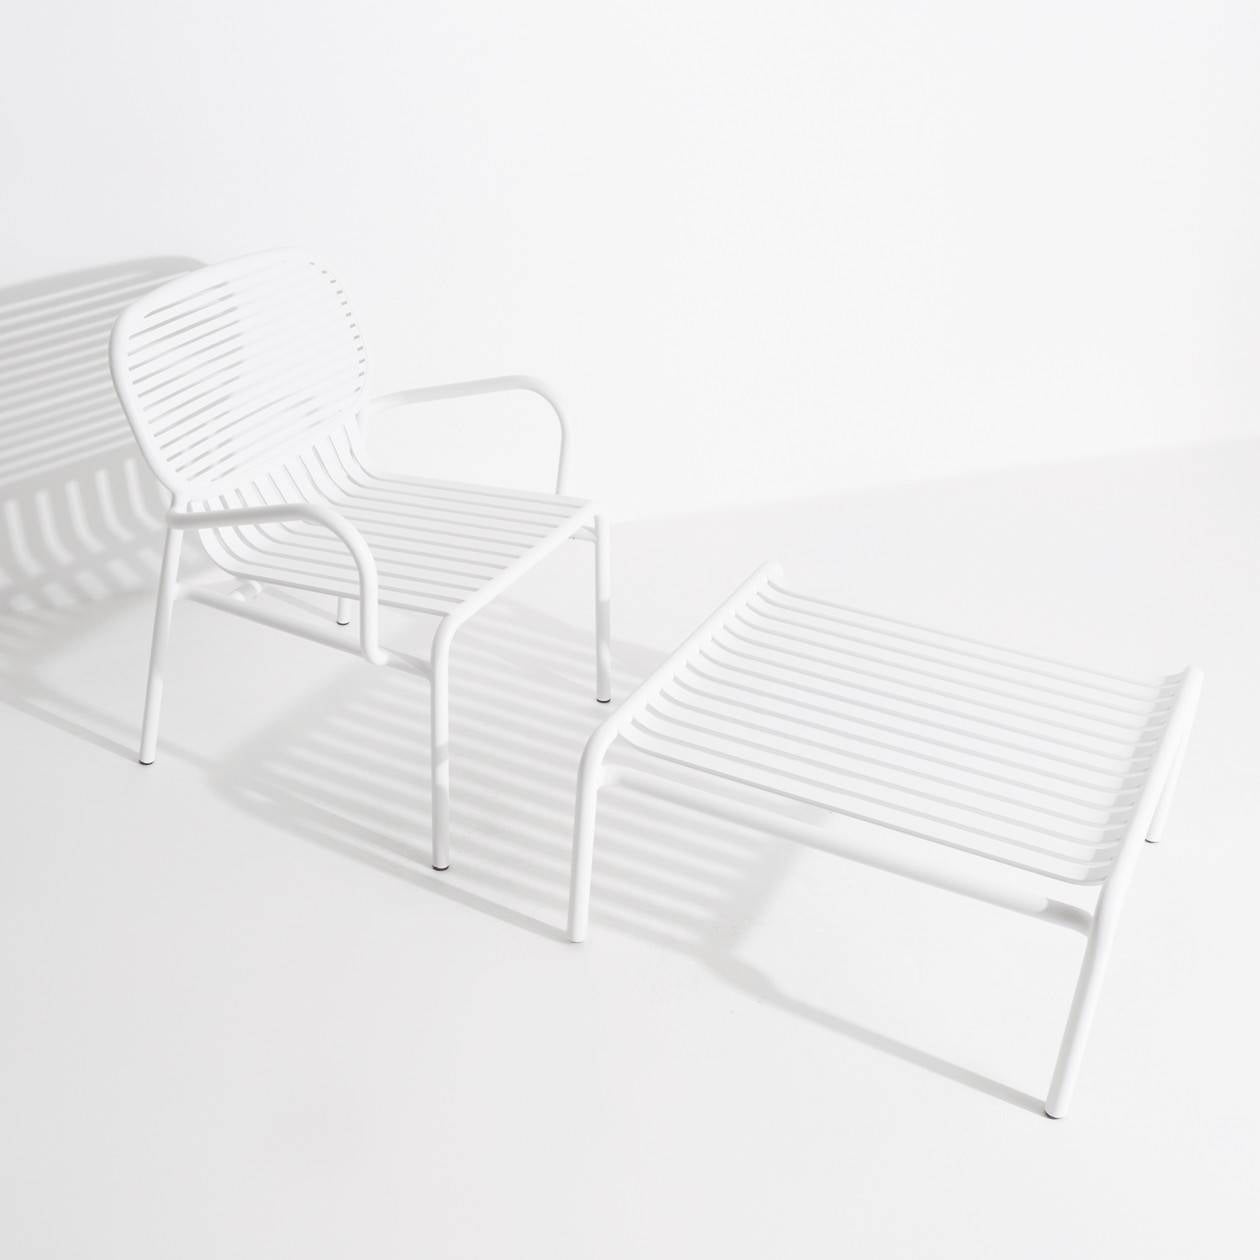 Week-End Coffee Table small in White präsentiert im Onlineshop von KAQTU Design AG. Beistelltisch Outdoor ist von Petite Friture